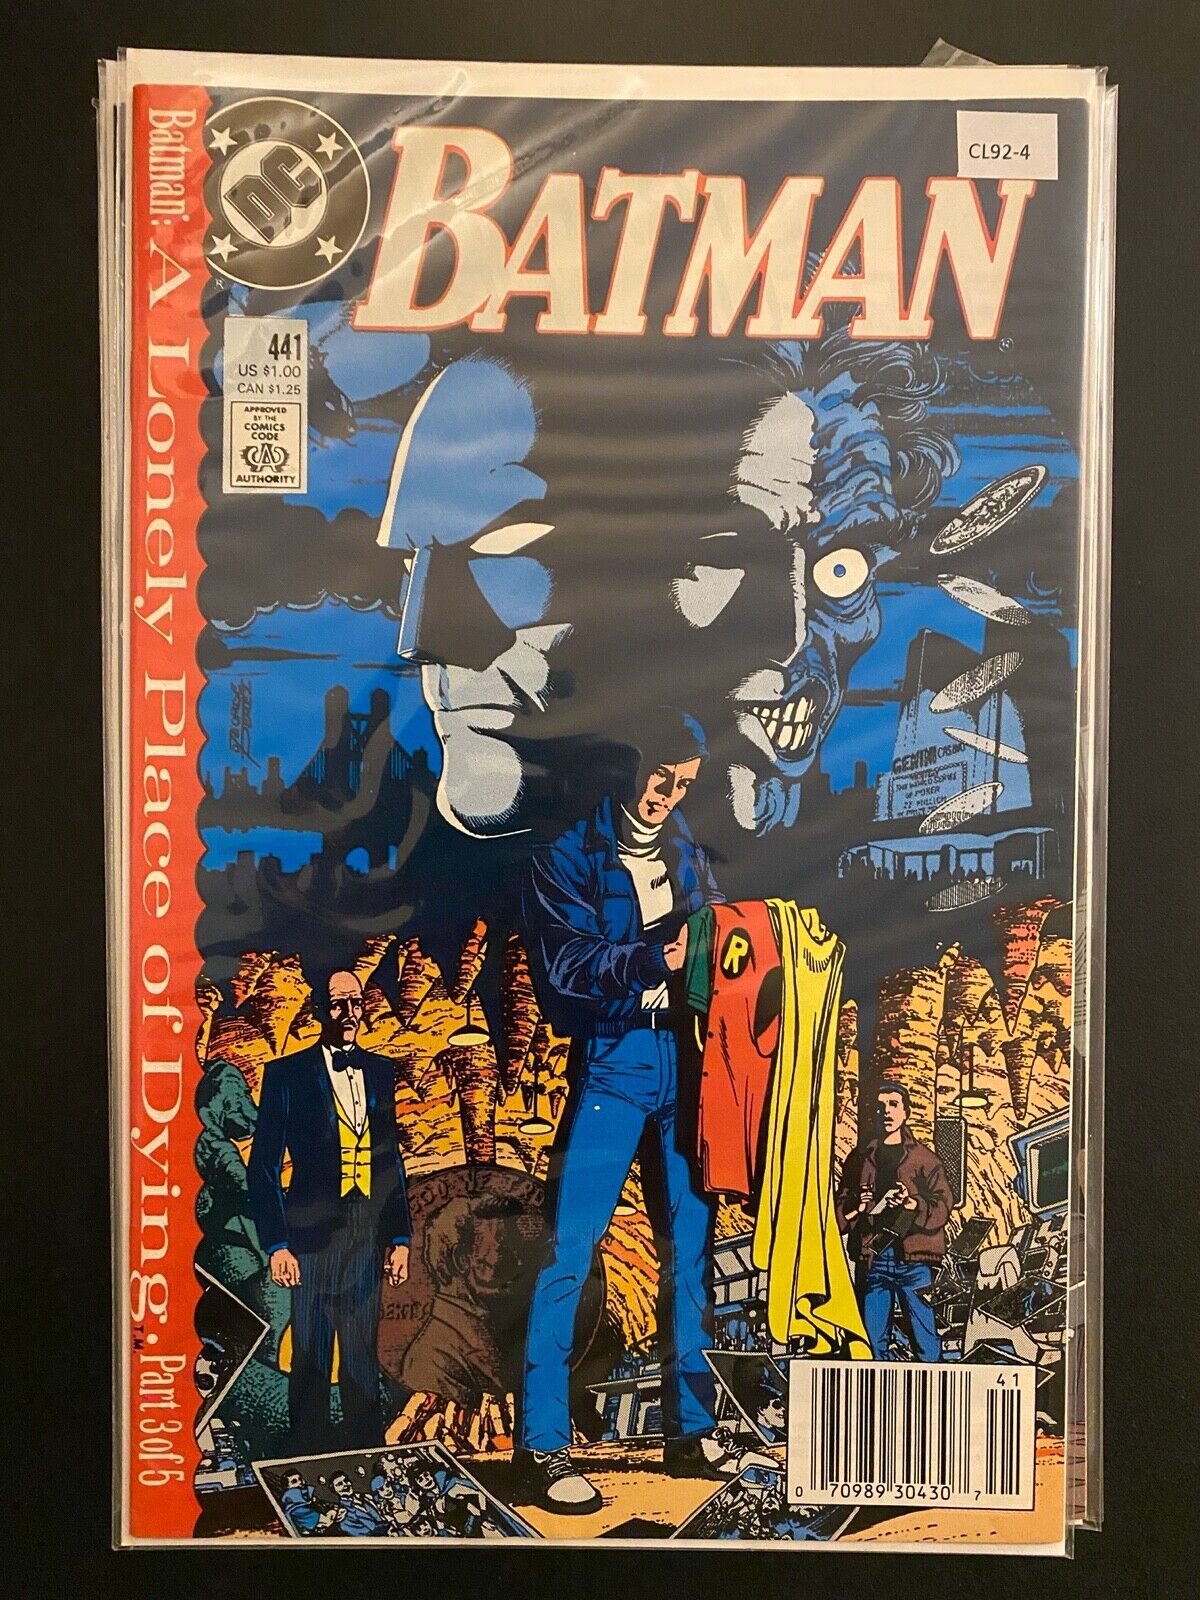 Batman vol.1 #441 1989 Newsstand High Grade 9.4 to 9.6 avg DC Comic Book CL92-4